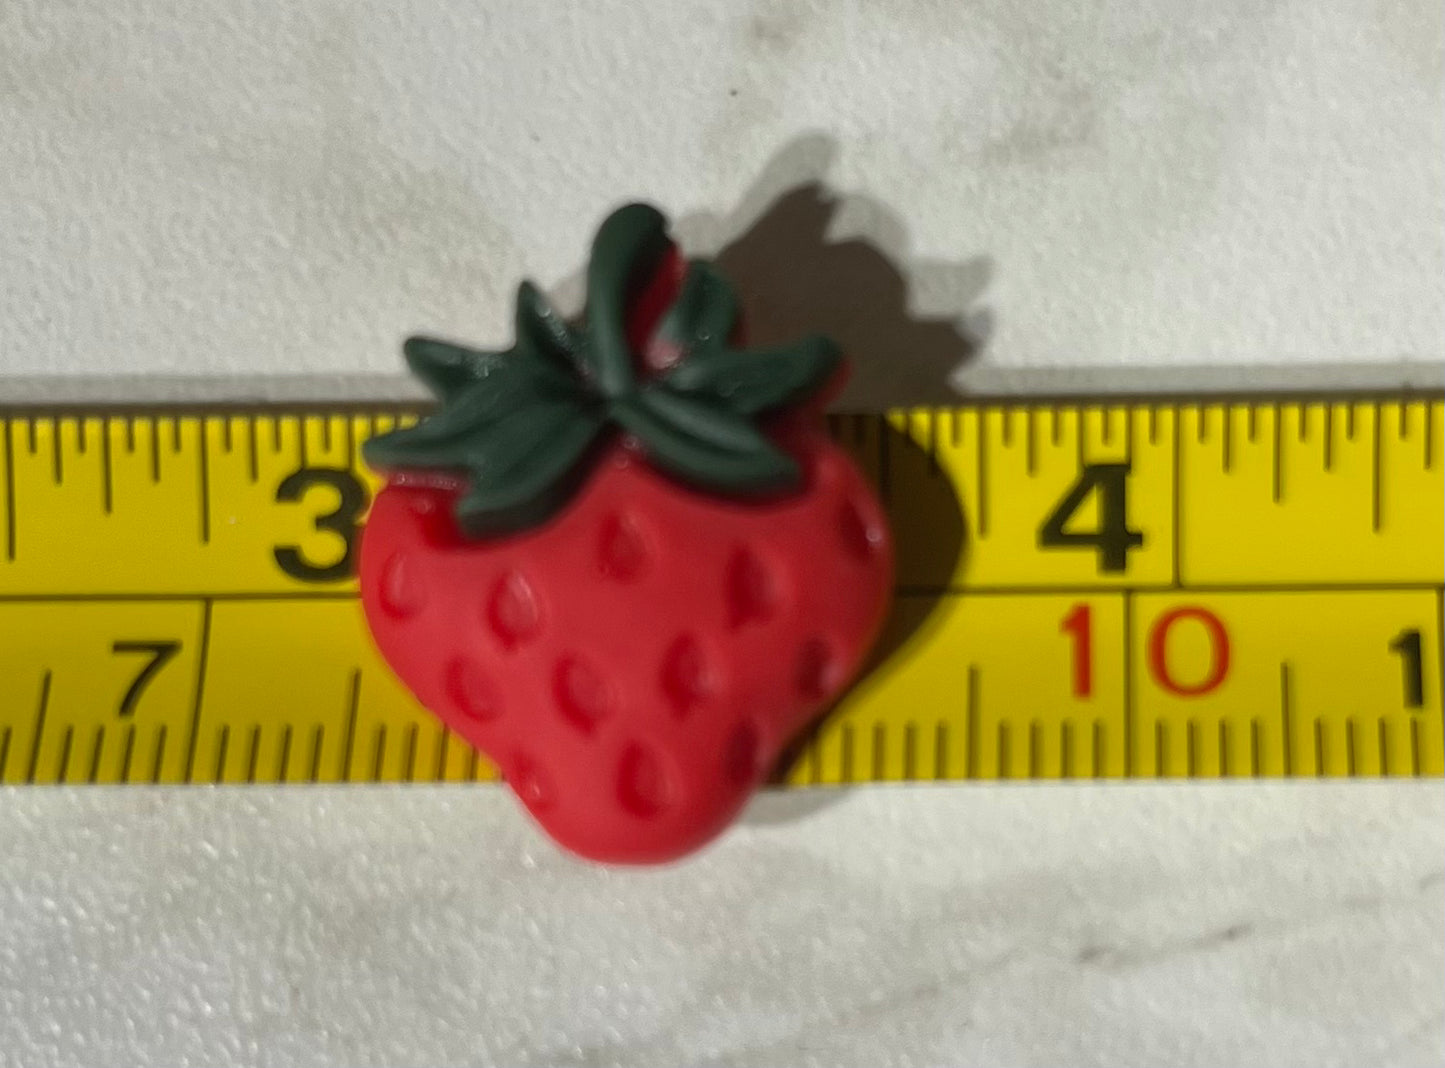 (2) Strawberries